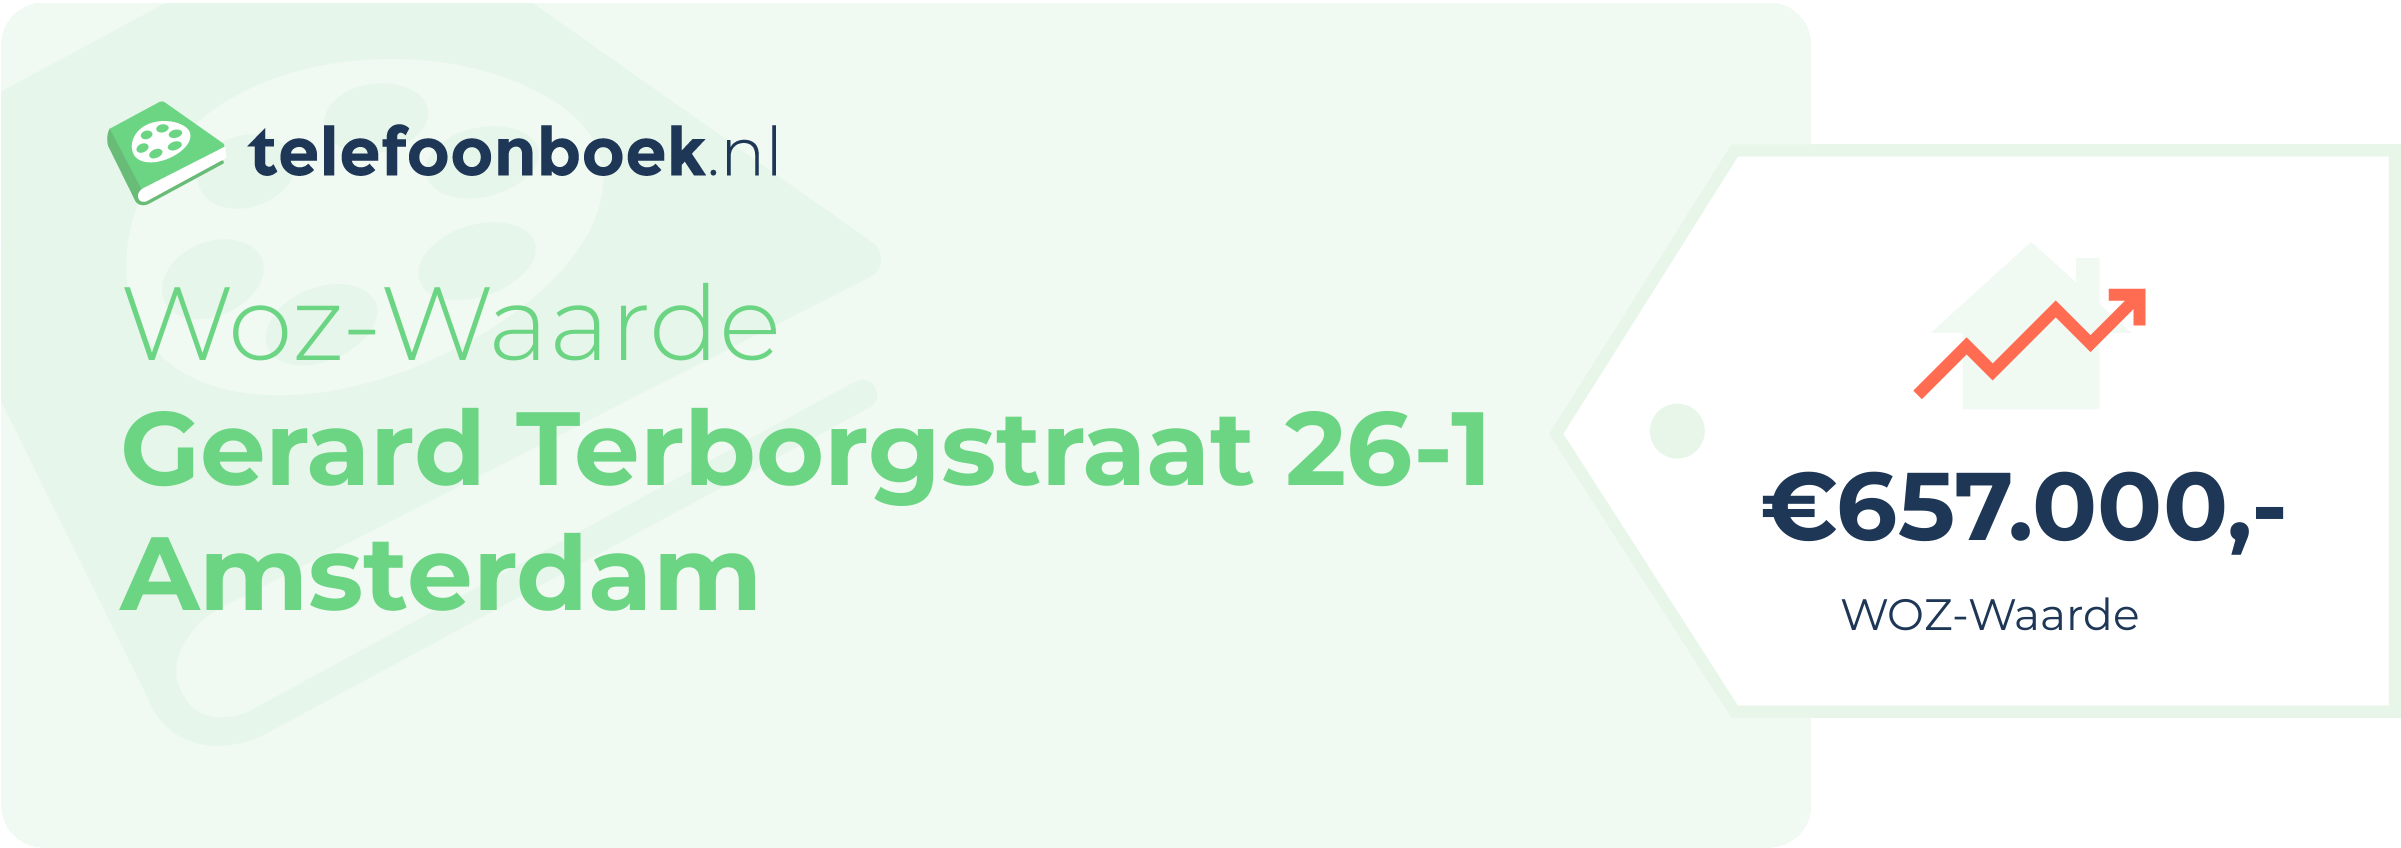 WOZ-waarde Gerard Terborgstraat 26-1 Amsterdam